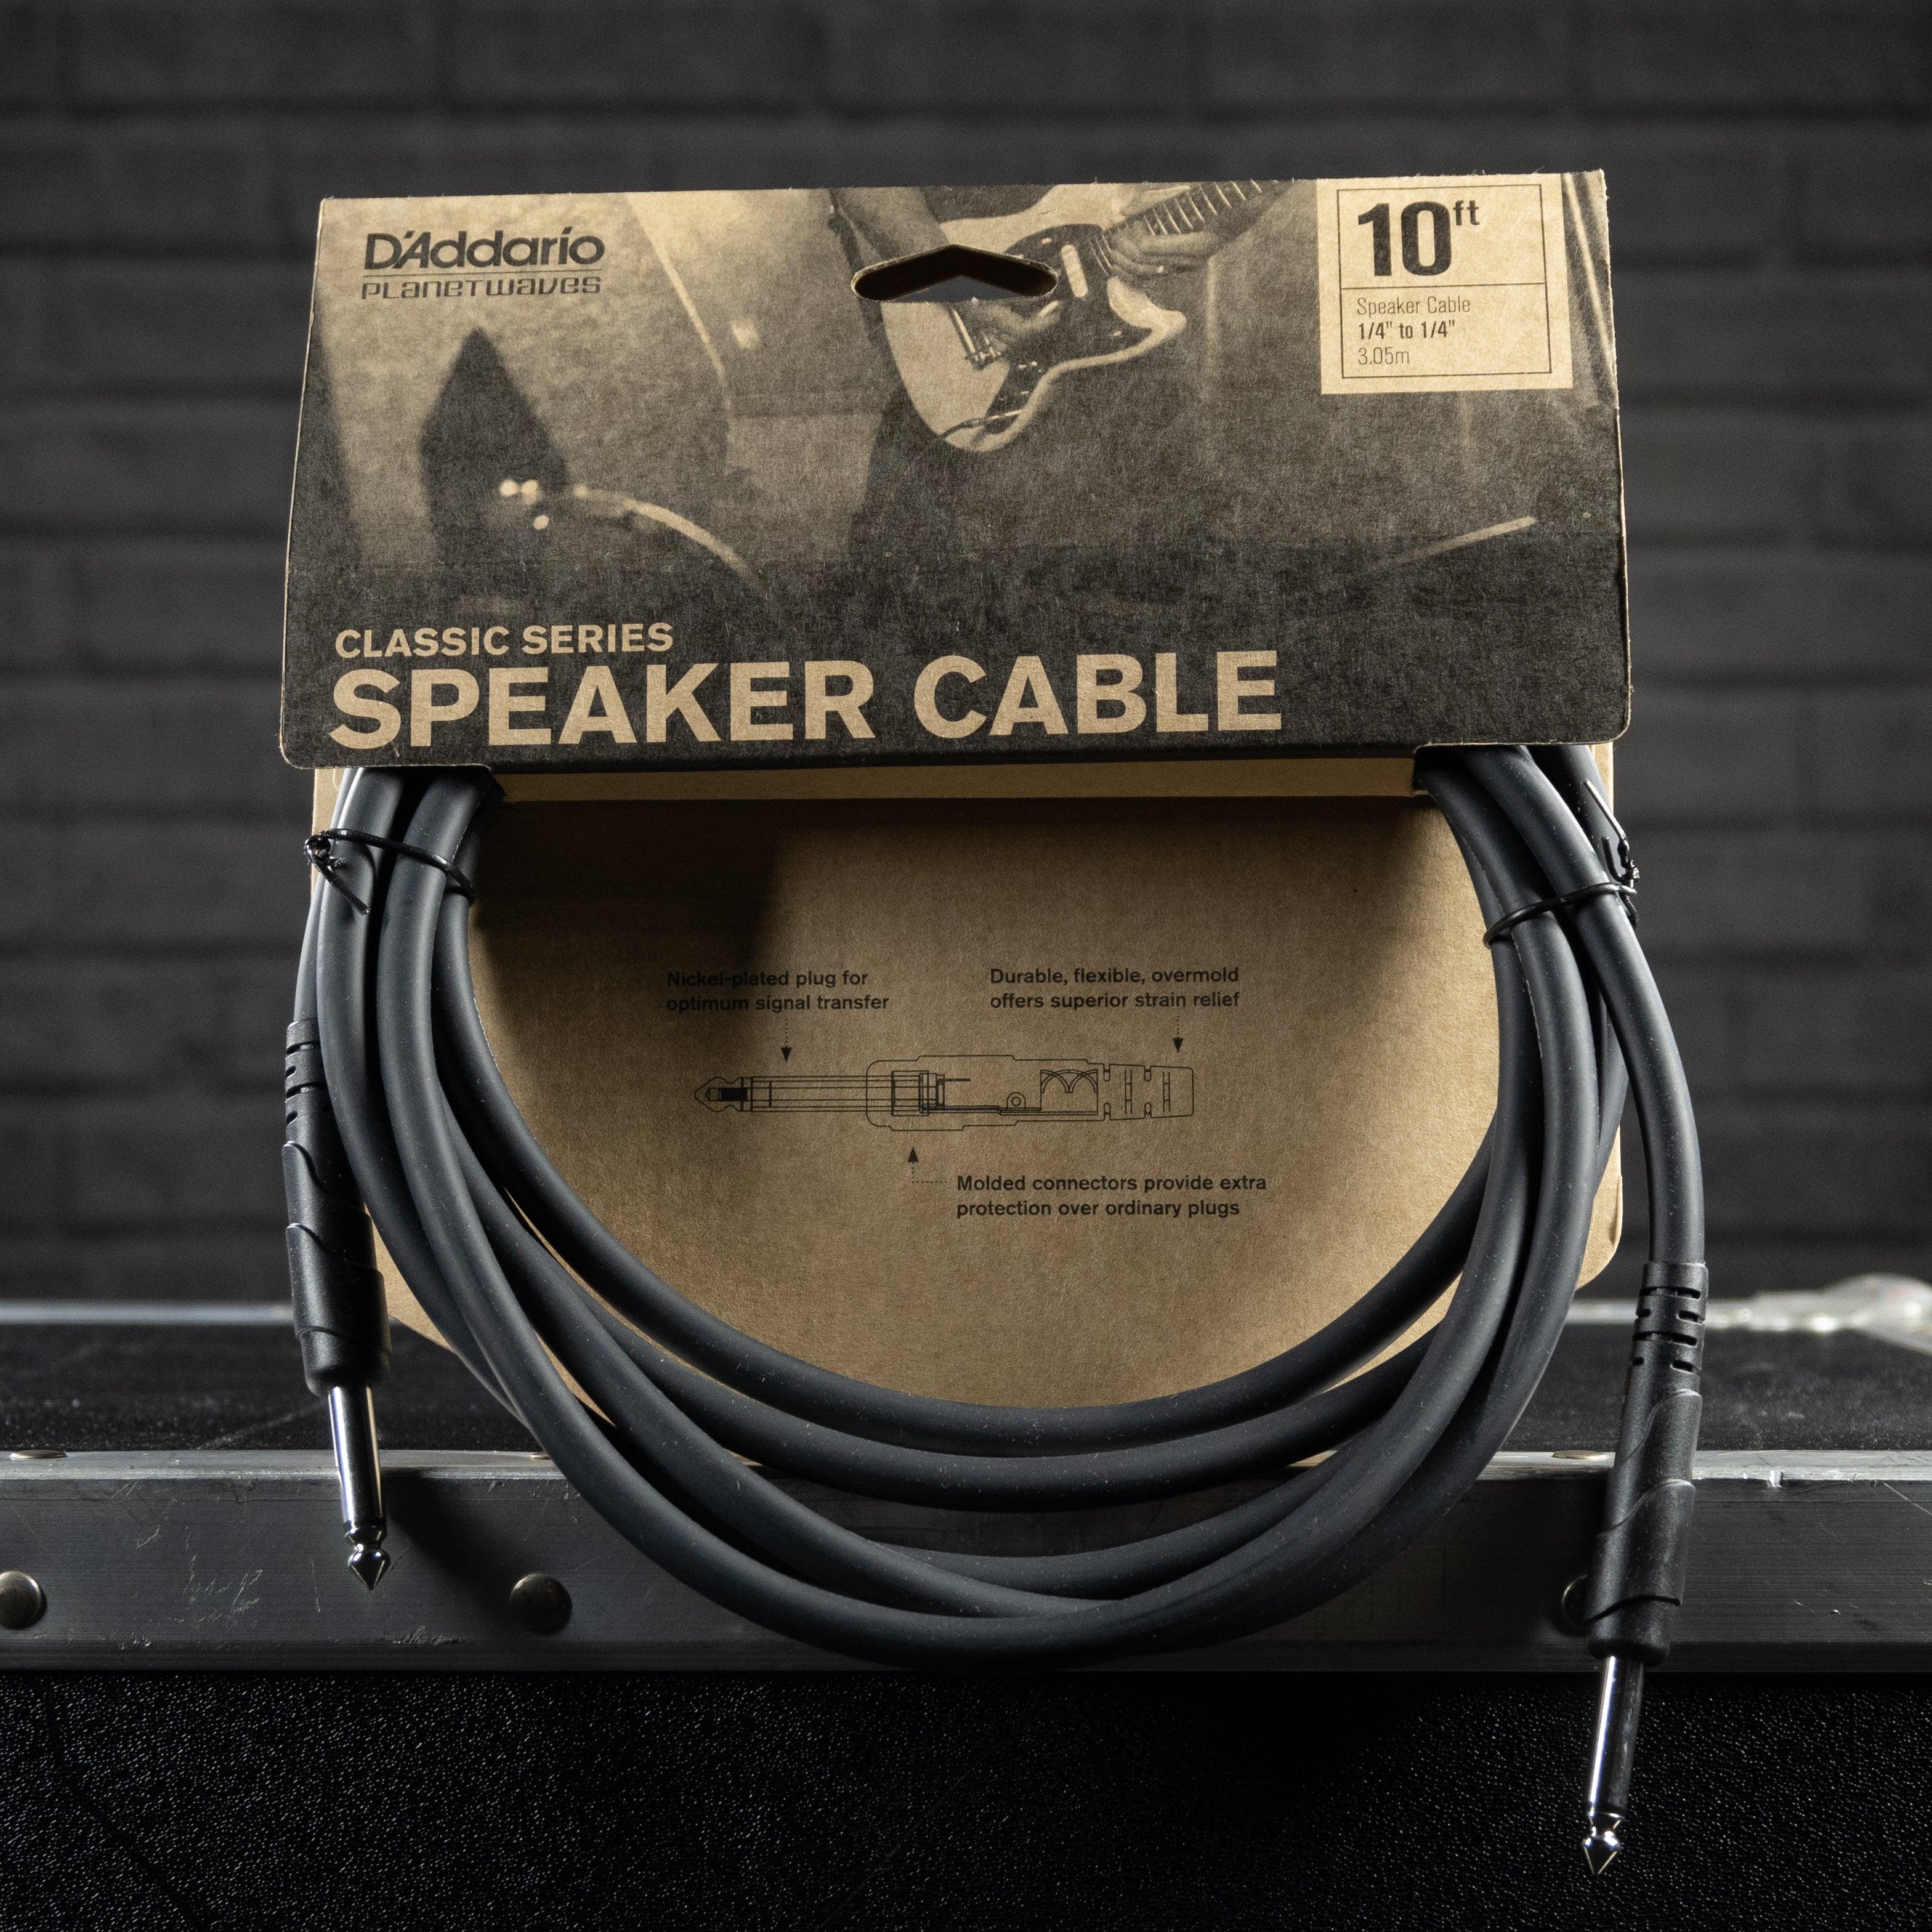 D’addario Classic Series Speaker Cable 10ft. - Impulse Music Co.